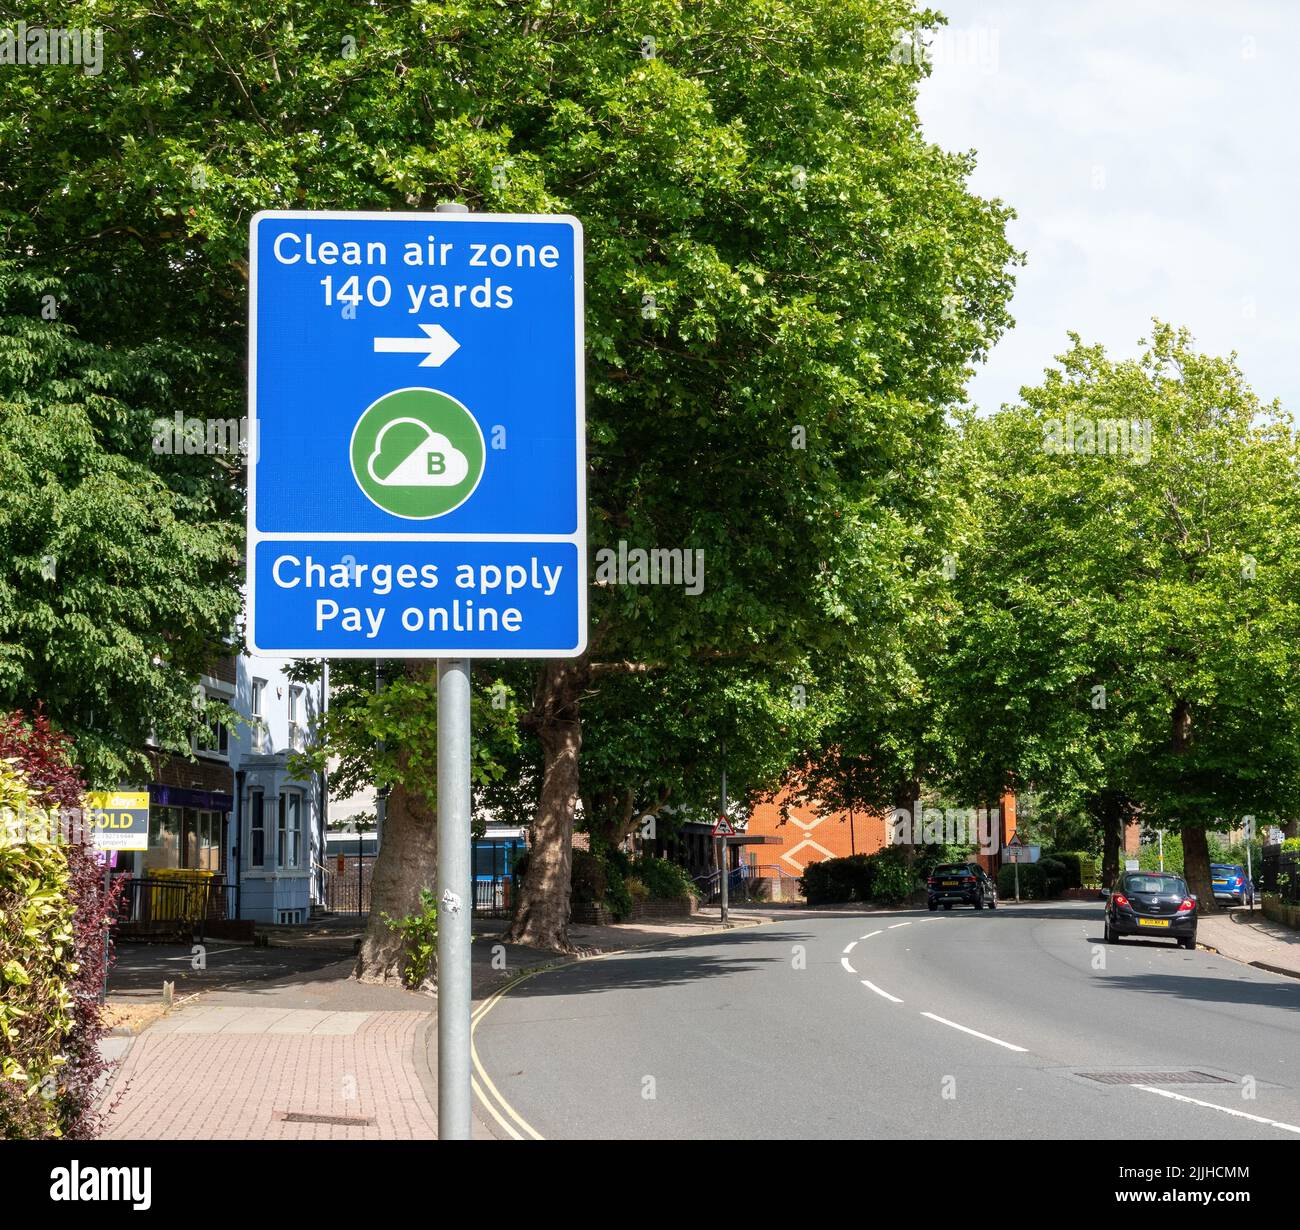 Ein Straßenschild, das anzeigt, dass Autos in eine Reinluftzone fahren und dass Gebühren anfallen Stockfoto